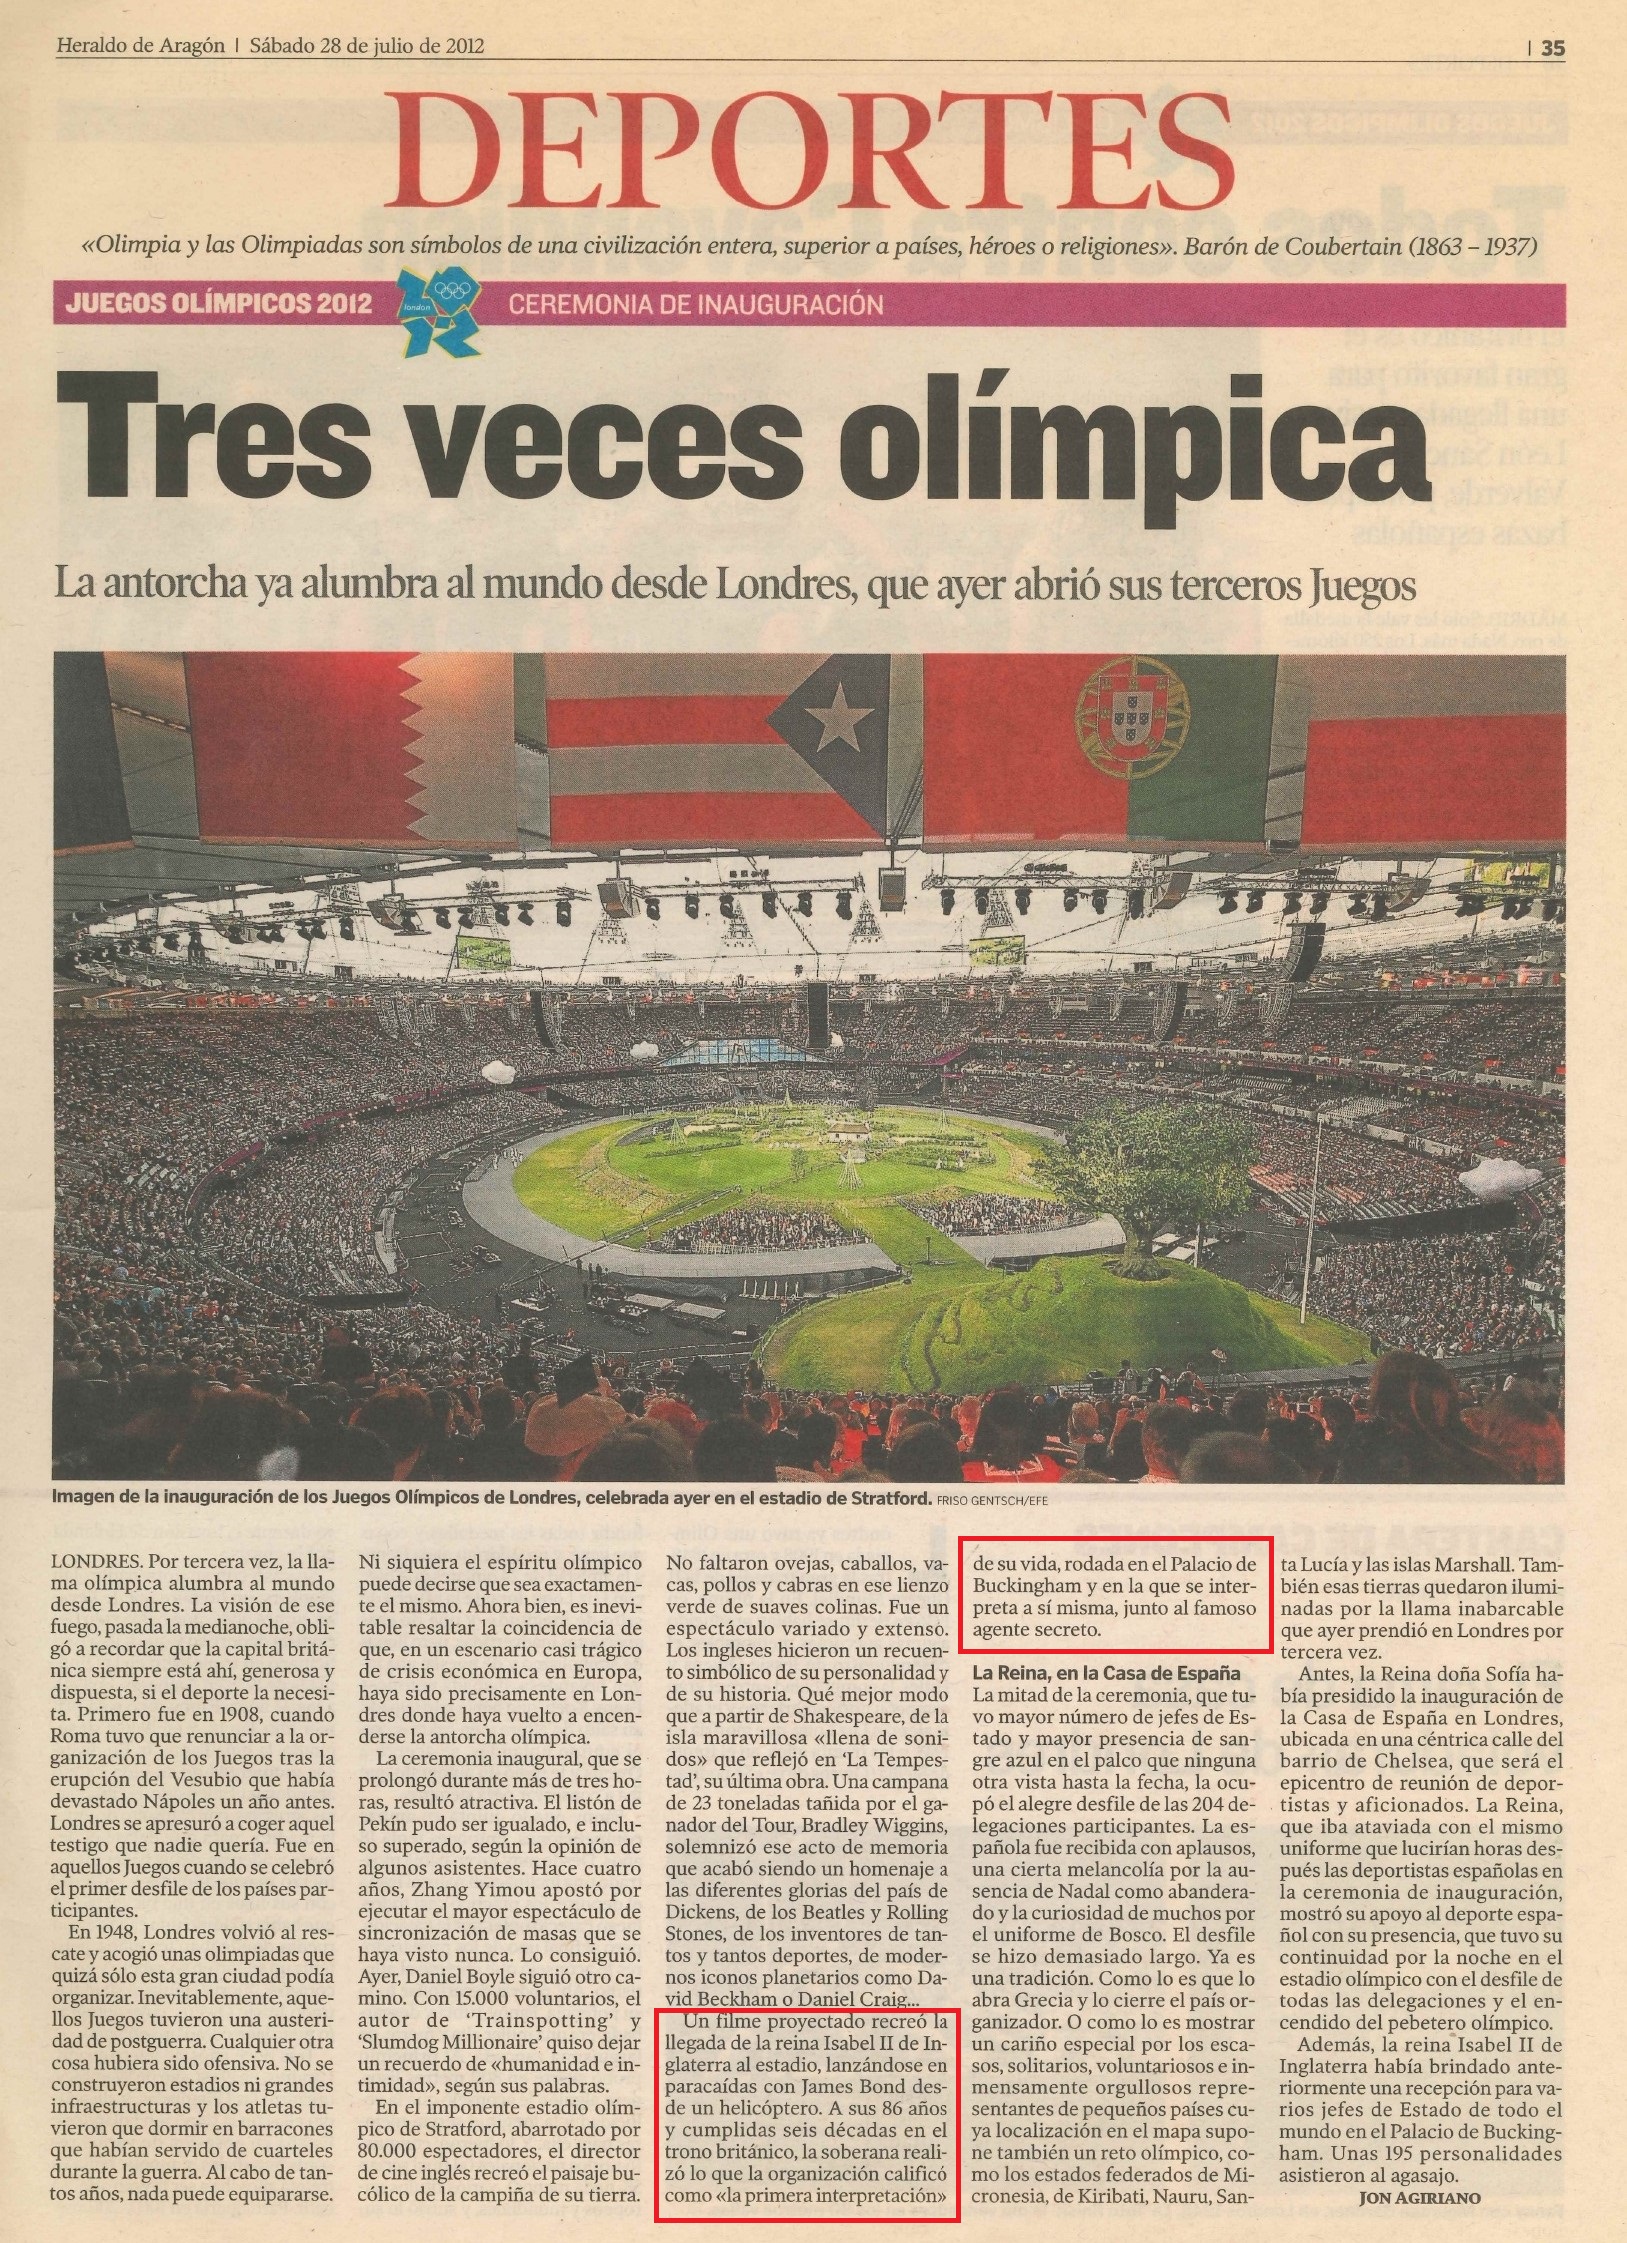 Olimpiadas 2012 07 28 Heraldo de Aragon 35